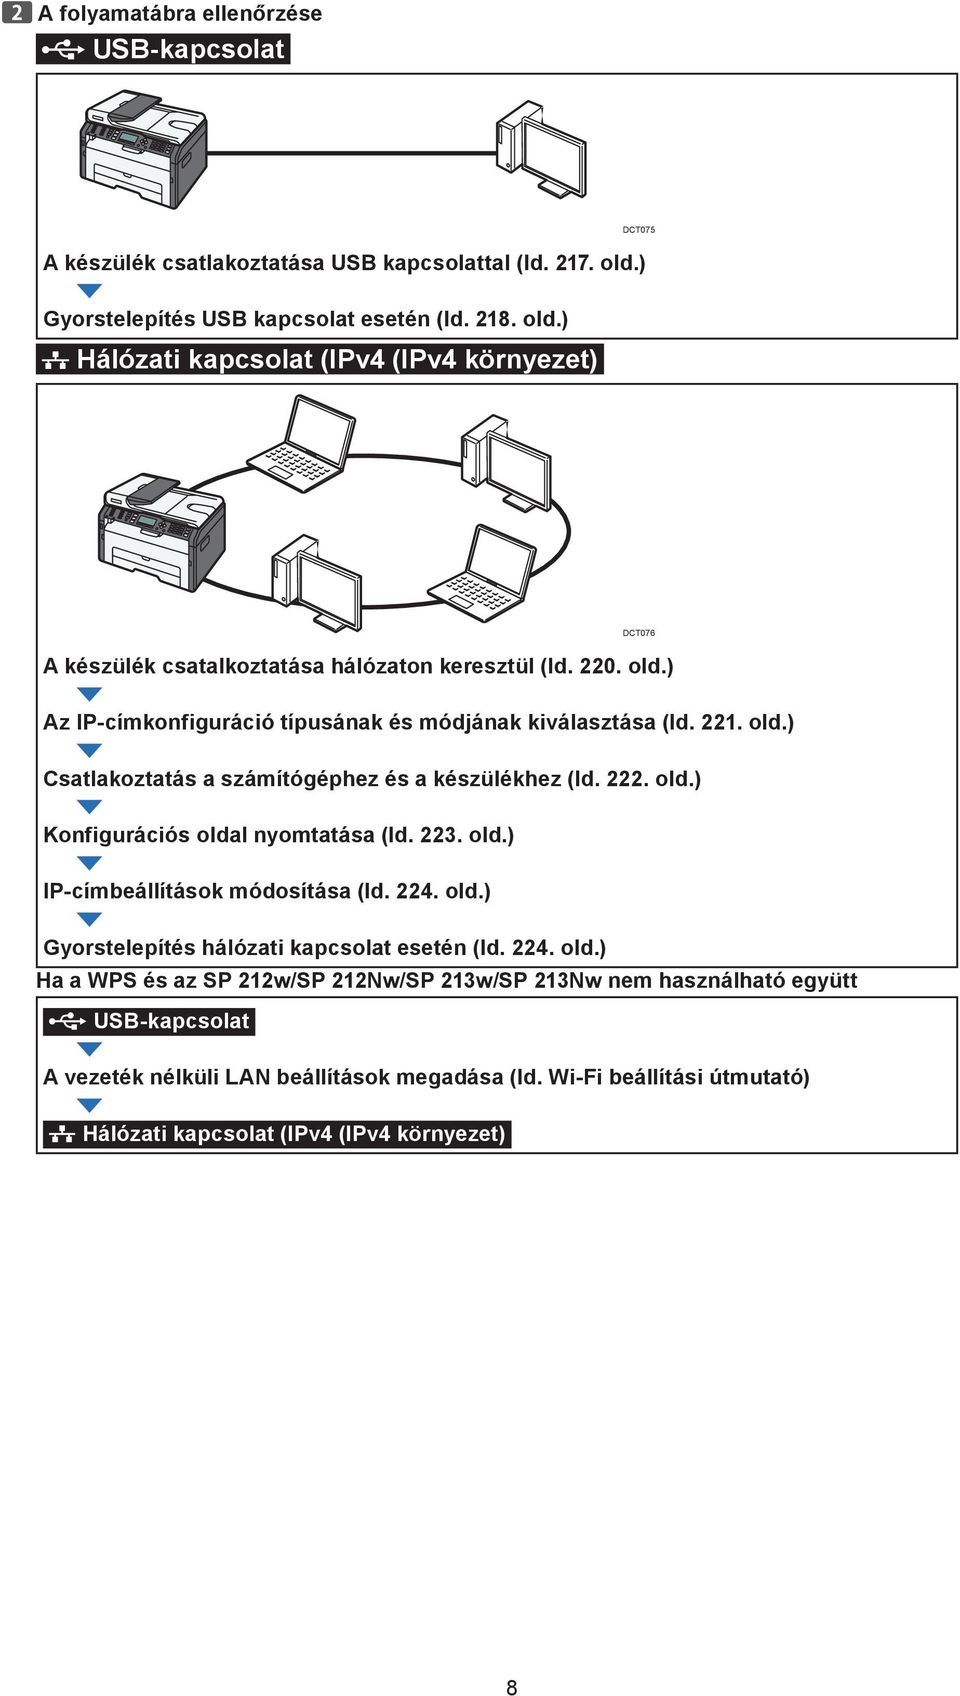 221. old.) Csatlakoztatás a számítógéphez és a készülékhez (ld. 222. old.) Konfigurációs oldal nyomtatása (ld. 223. old.) IP-címbeállítások módosítása (ld. 224. old.) Gyorstelepítés hálózati kapcsolat esetén (ld.